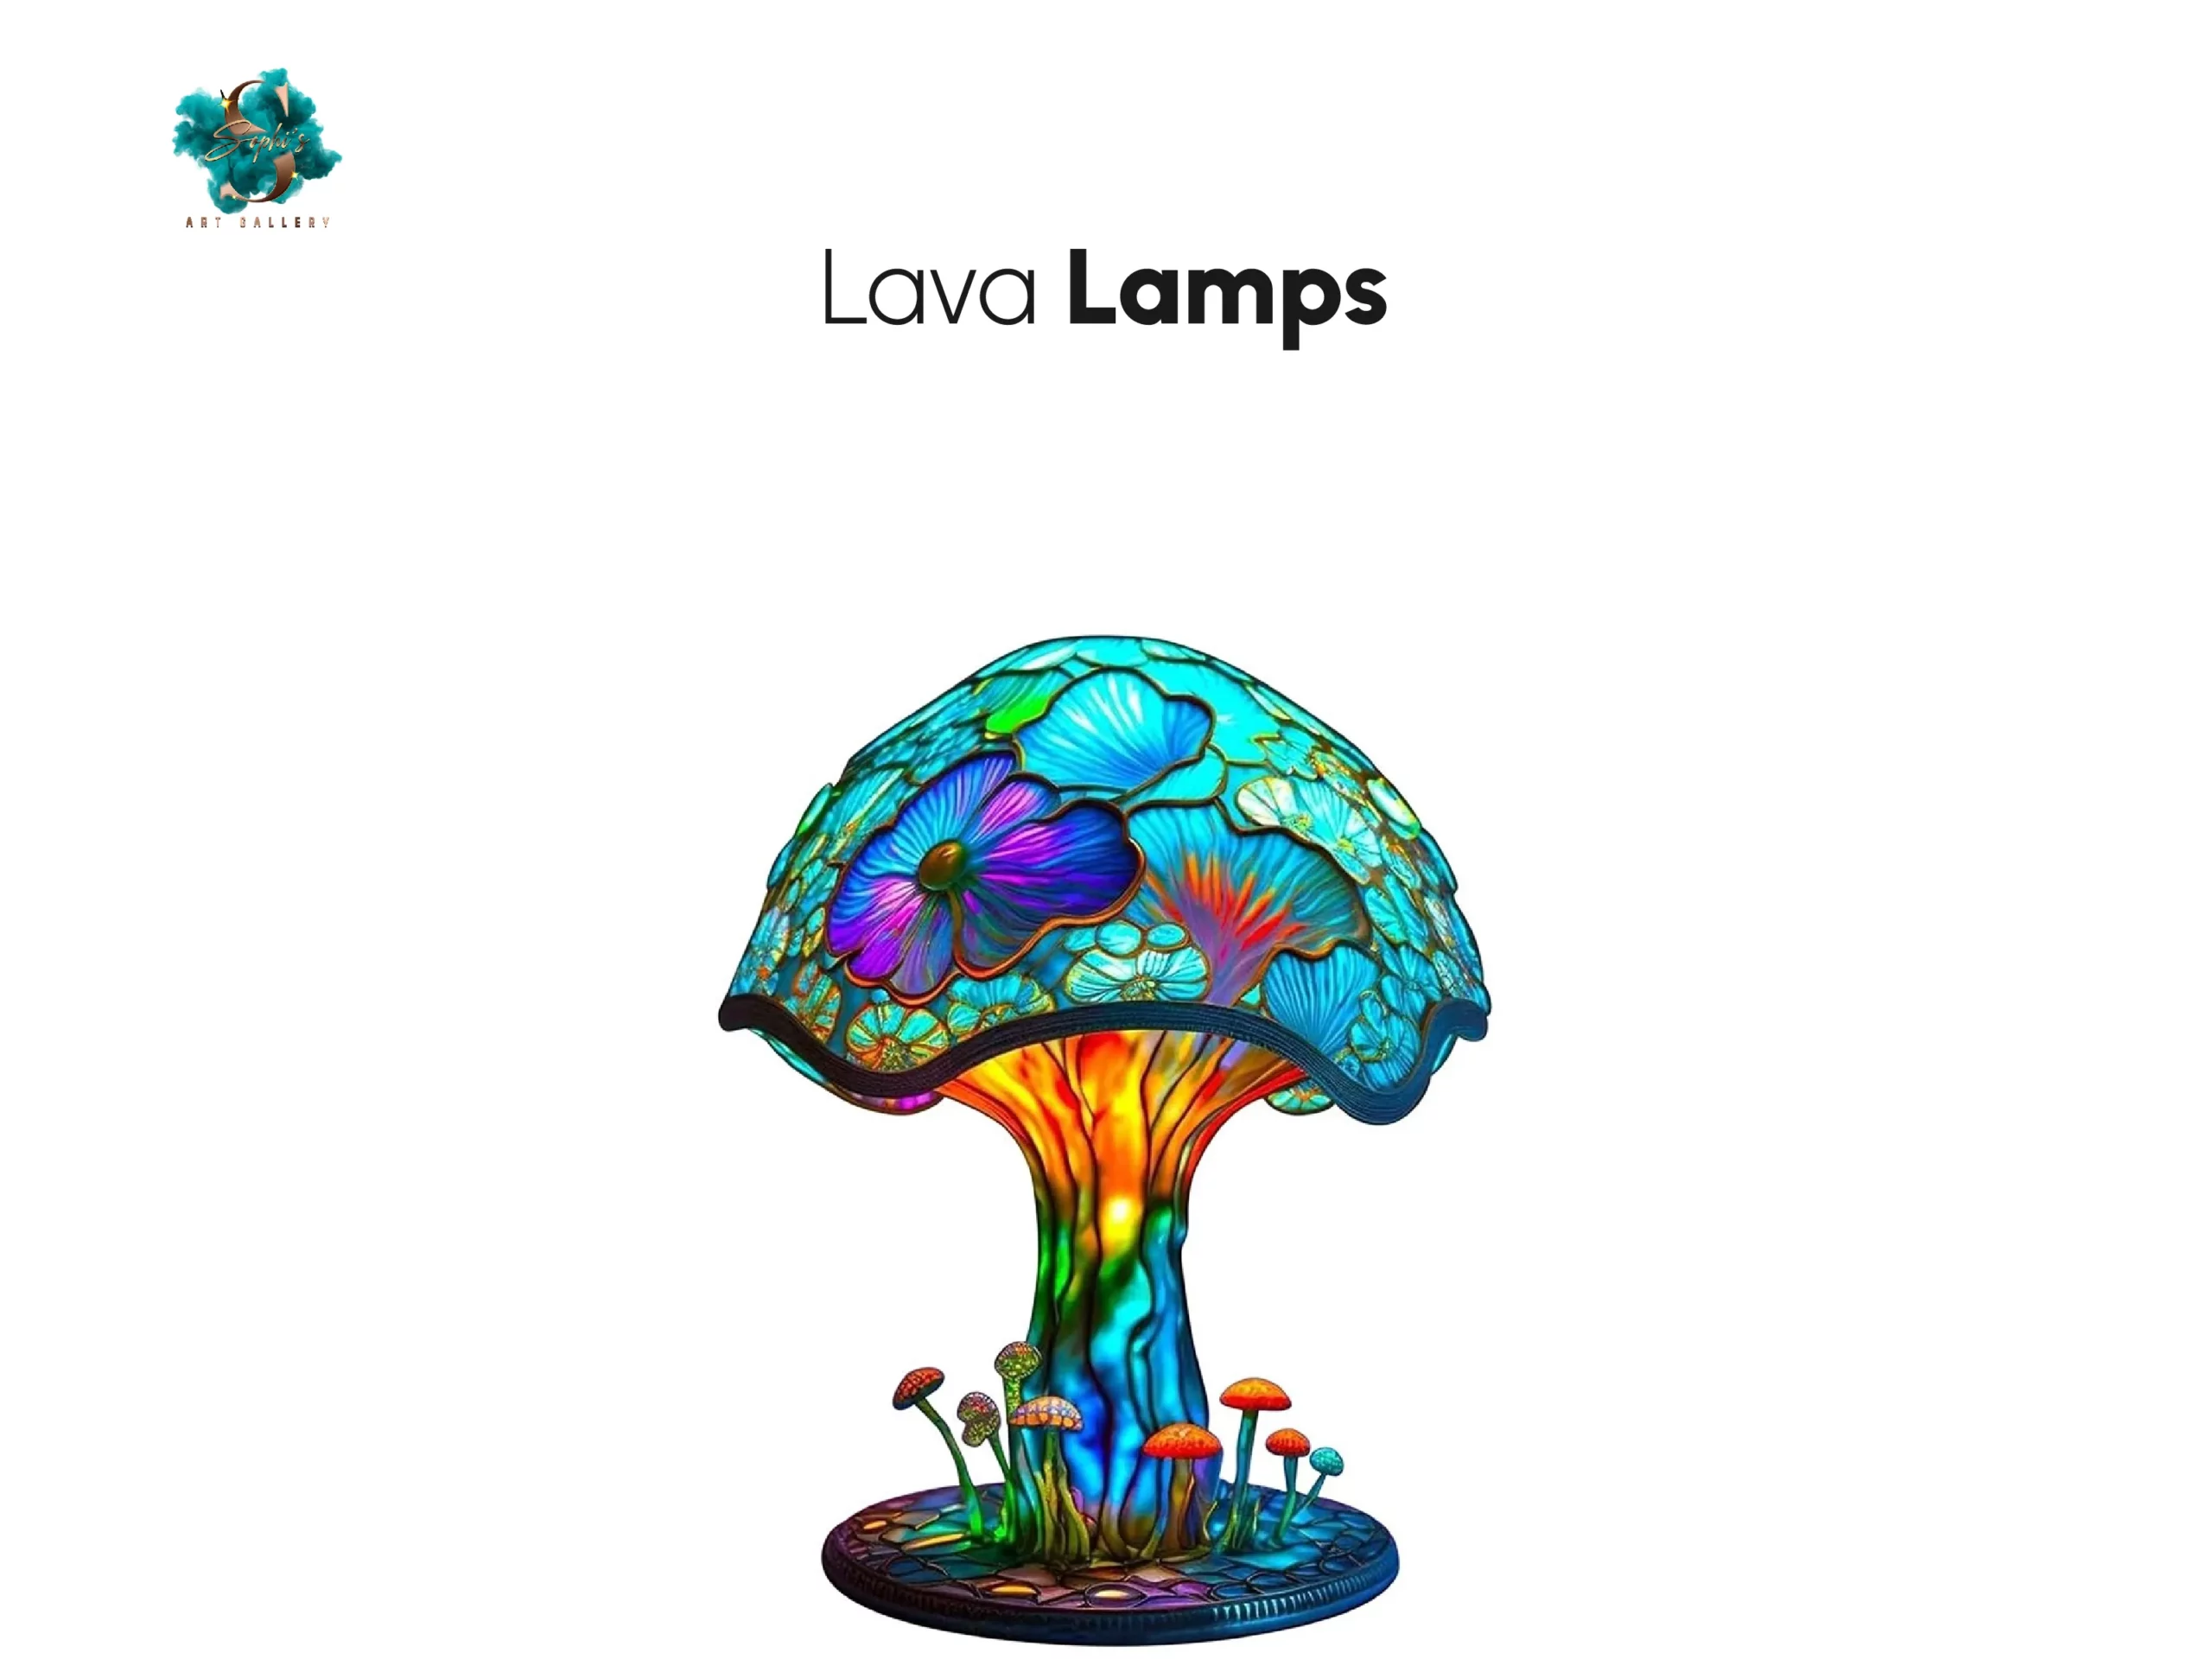 Lava lamps